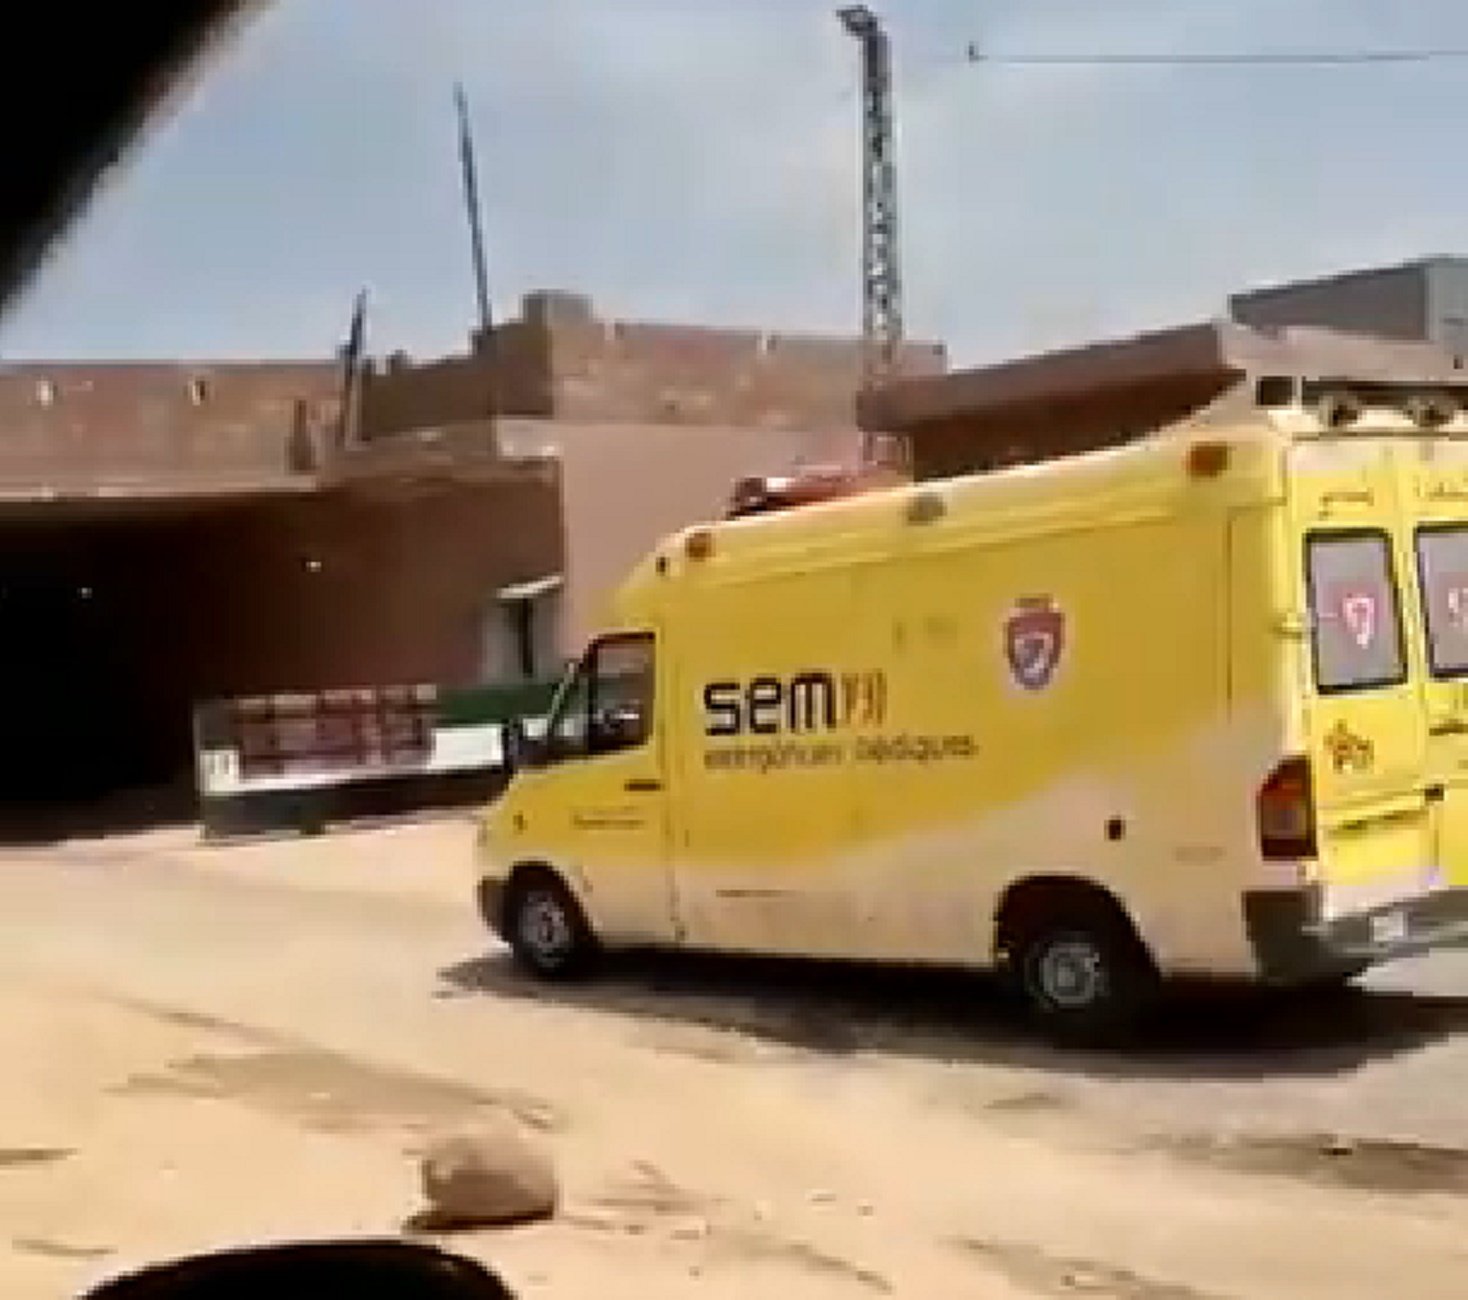 VÍDEO | Què fa una ambulància del SEM evacuant militars turcs a Síria?